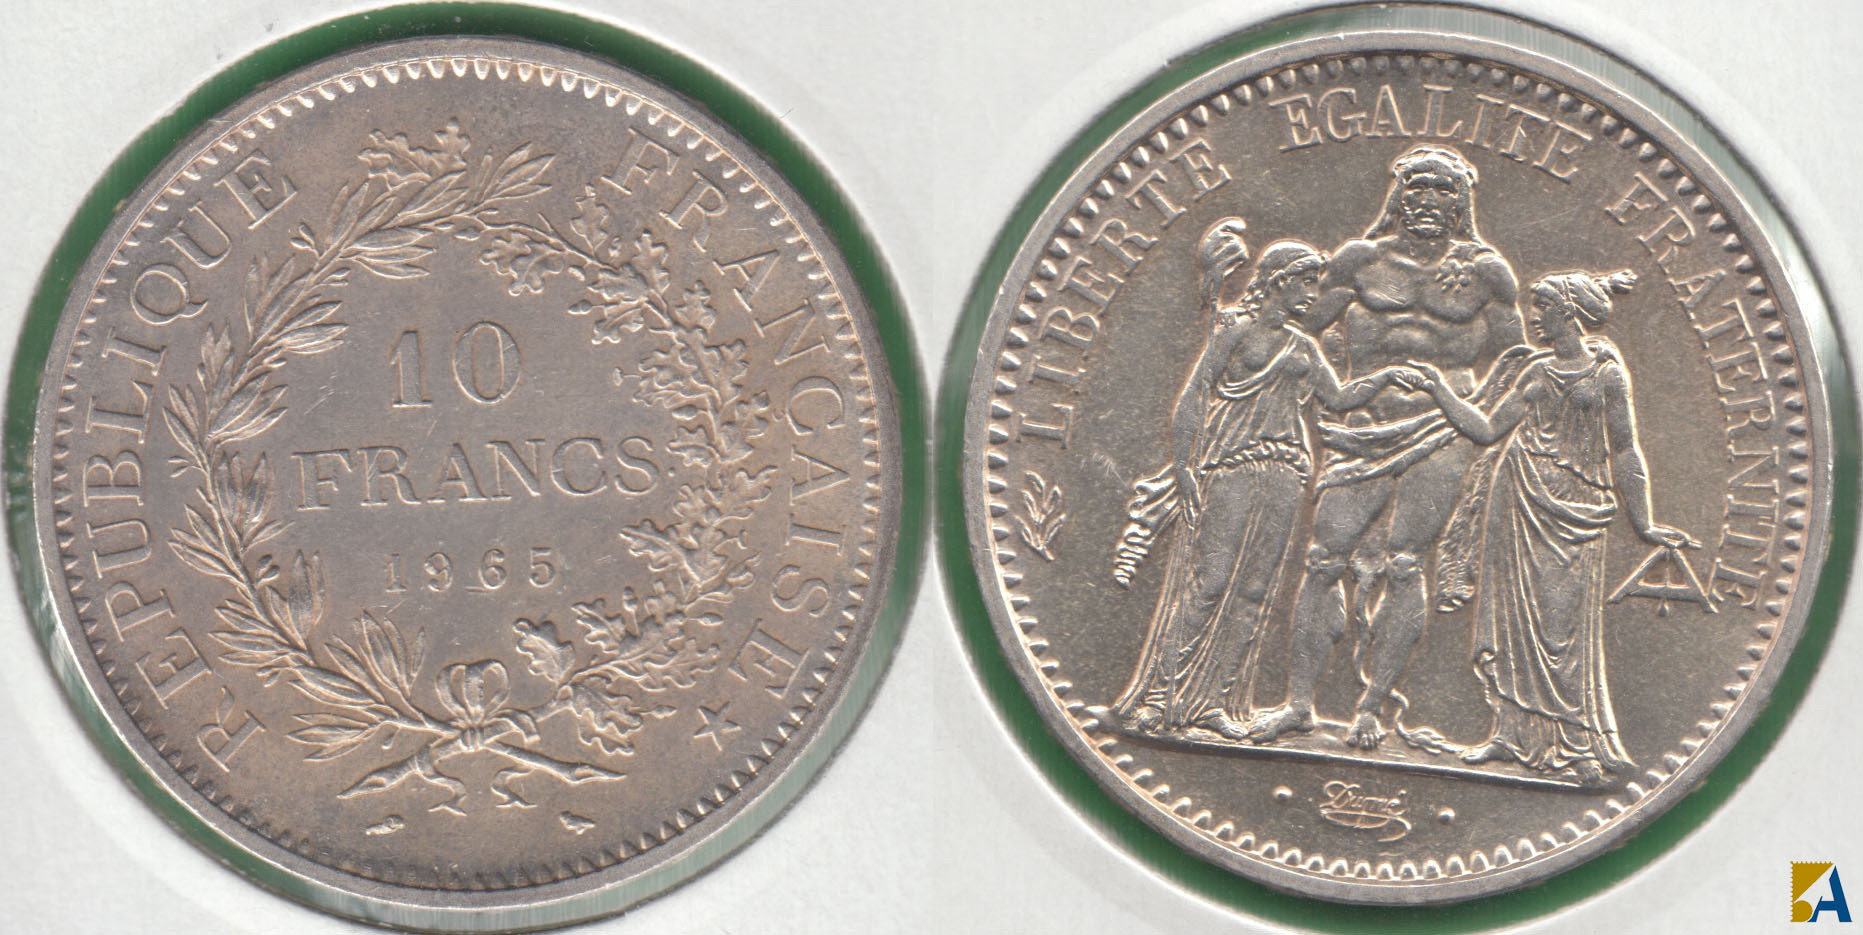 FRANCIA - FRANCE. 10 FRANCOS (FRANCS) DE 1965. PLATA 0.900. (2)